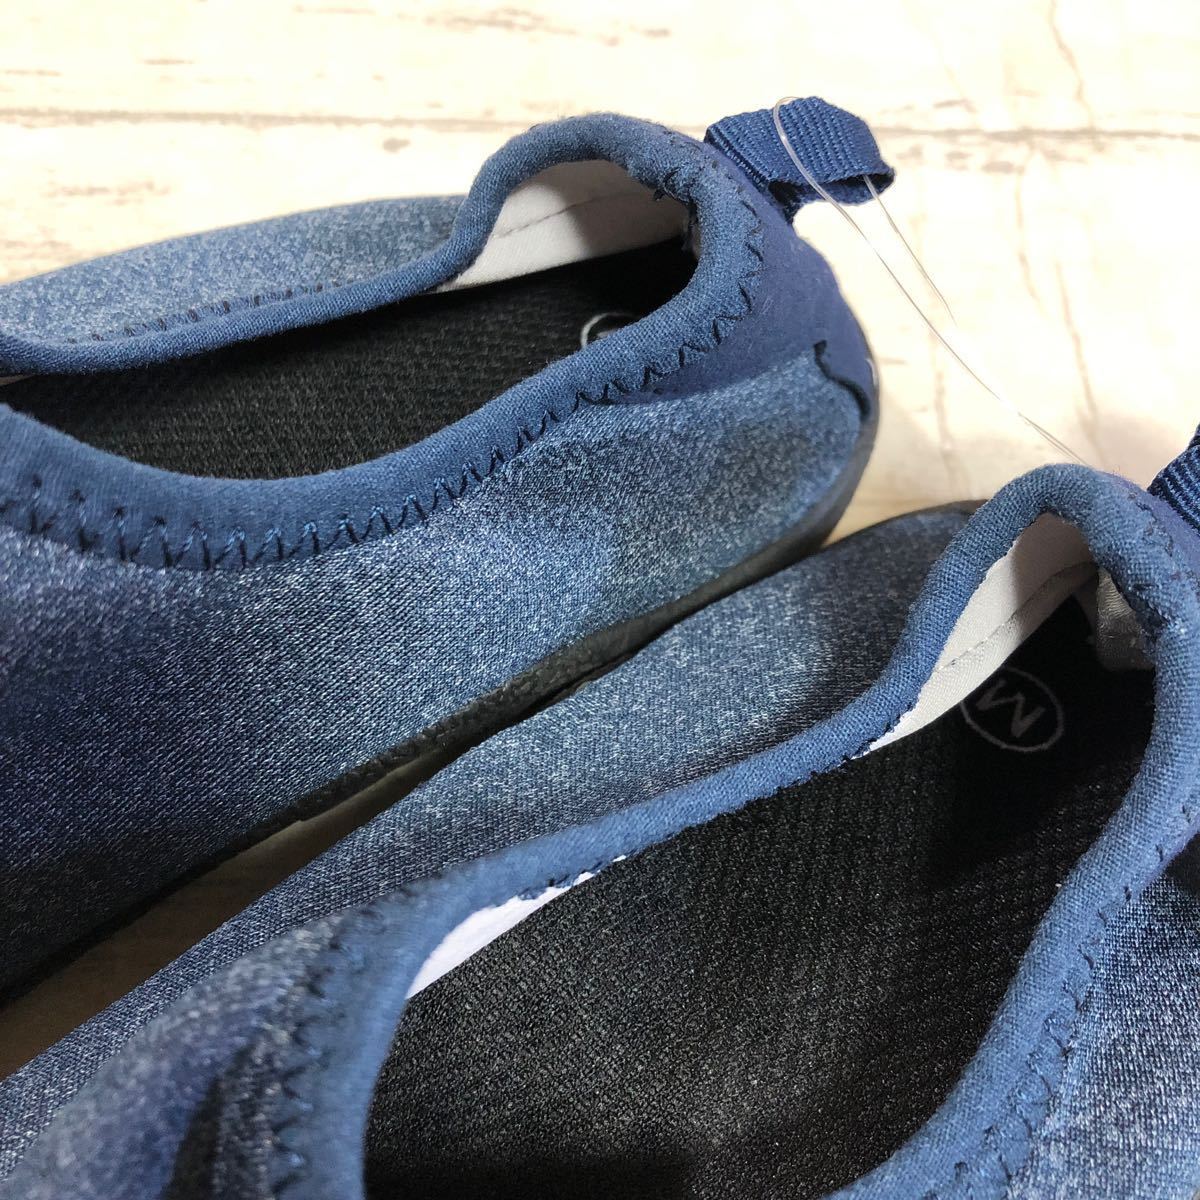  с биркой не использовался товар мужской морской обувь голубой M размер туфли без застежки водные развлечения обувь Sagawa Express соответствие .